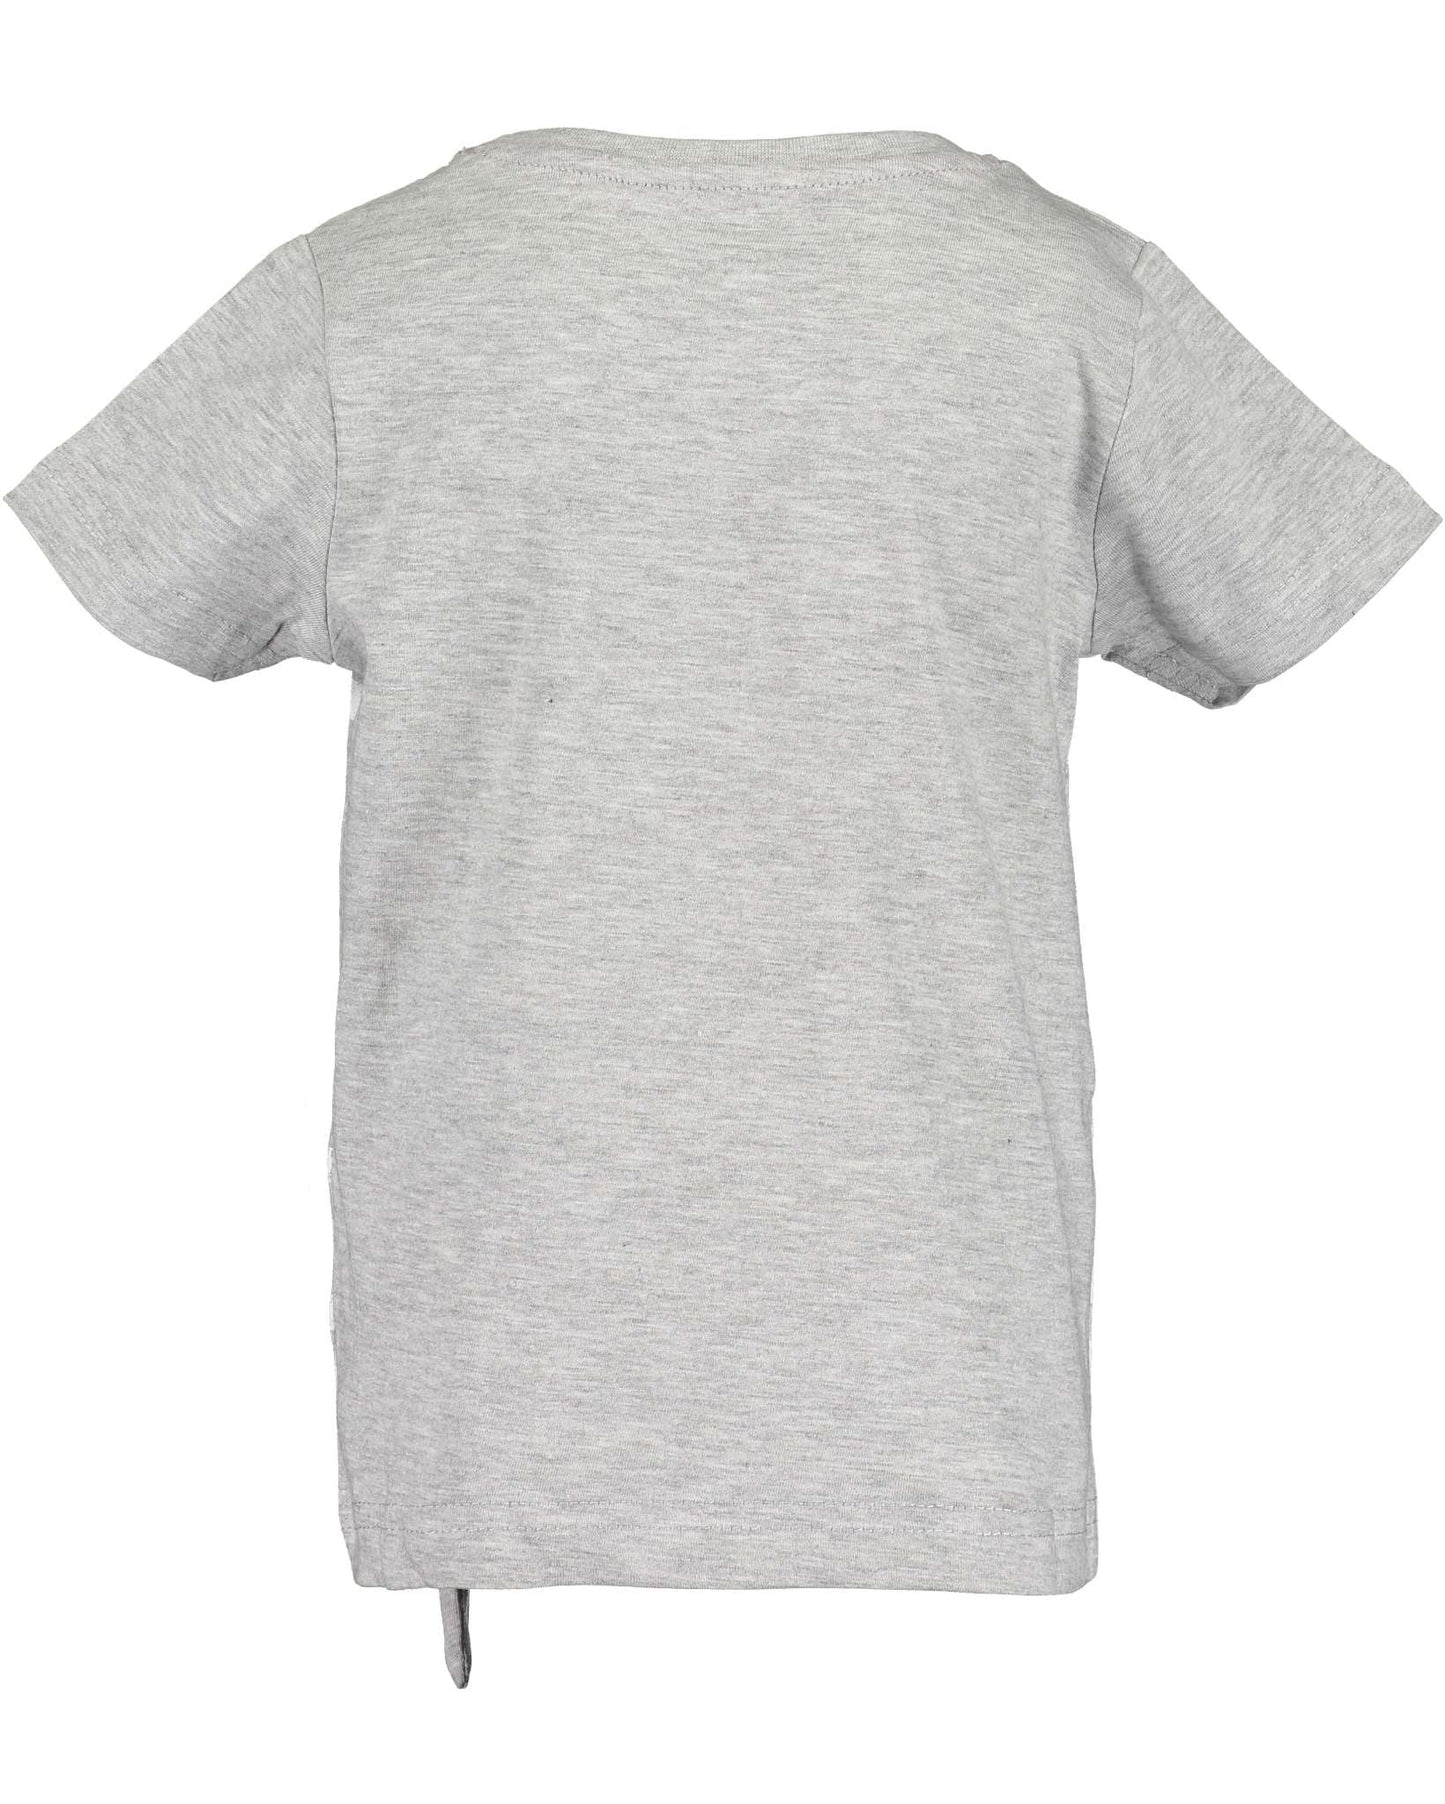 Girls Grey & White Striped Koala T Shirt - Nana B Baby & Childrenswear Boutique